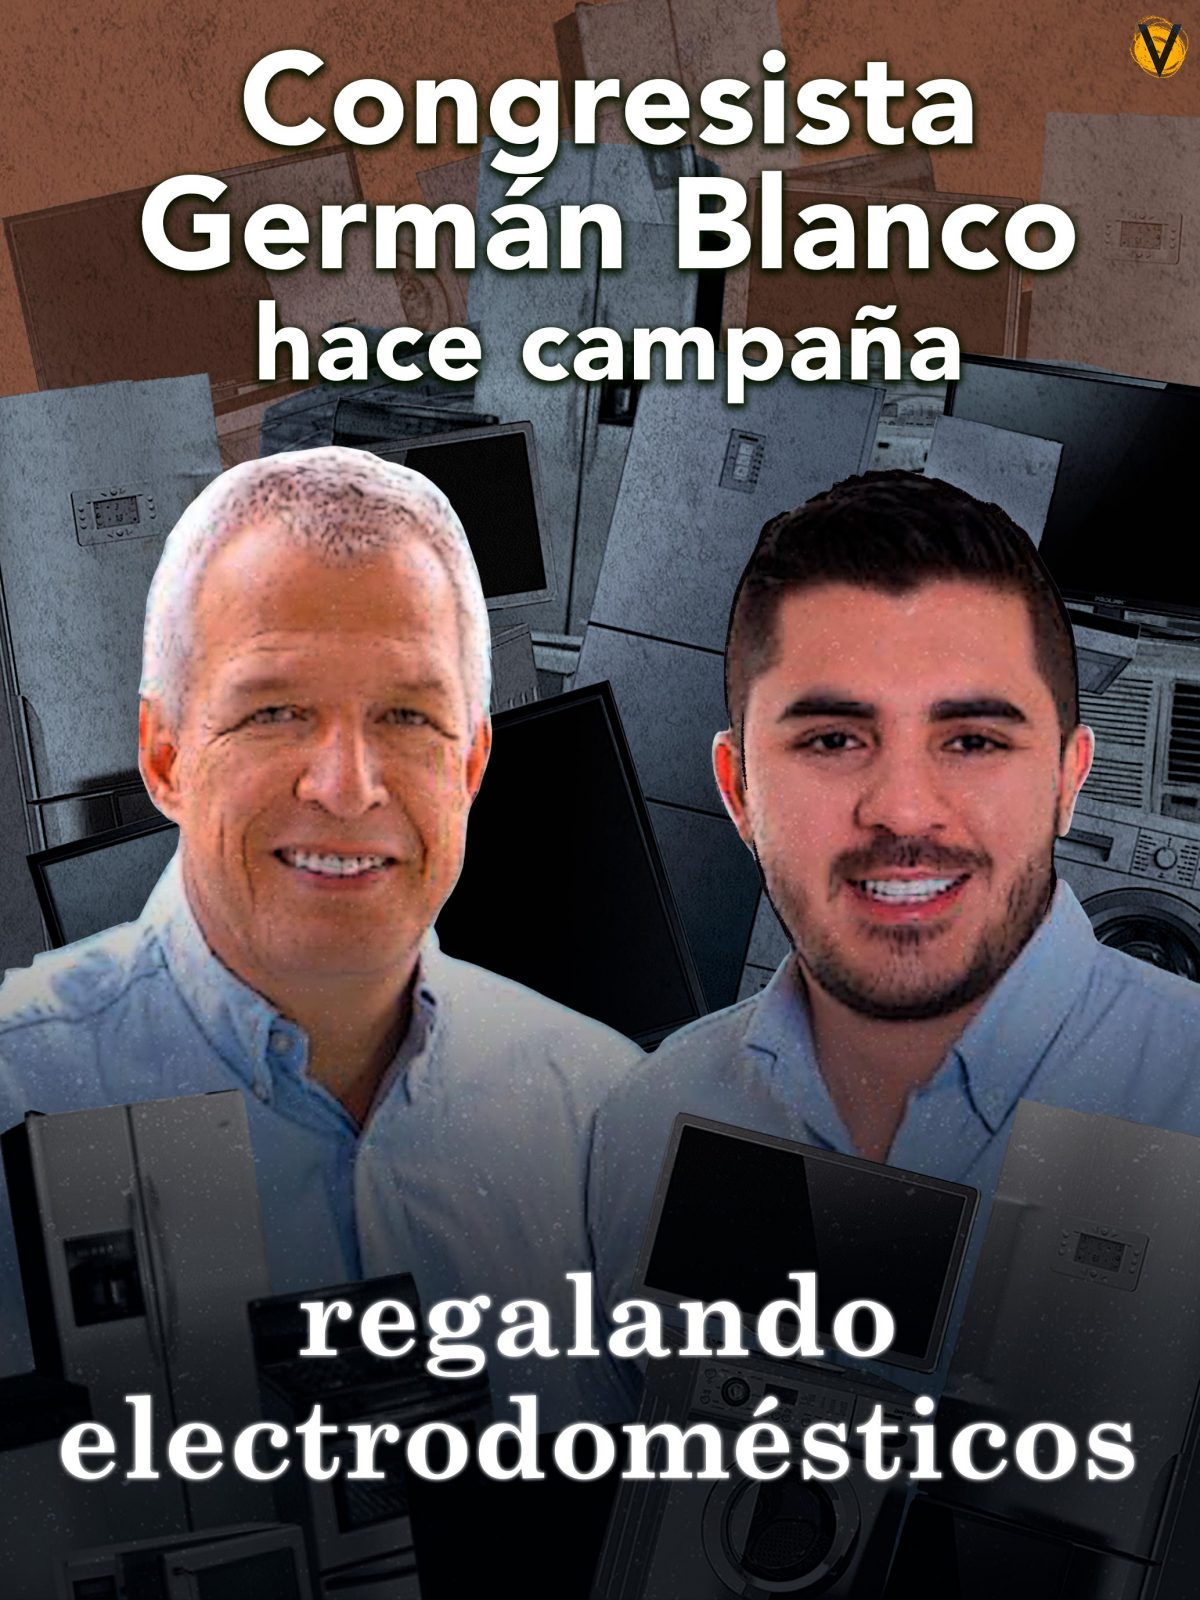 Congresista-German-Blanco-Camilo-Callejas-Partido-Conservador-Votos-Campana-electrodomesticos-Antioquia